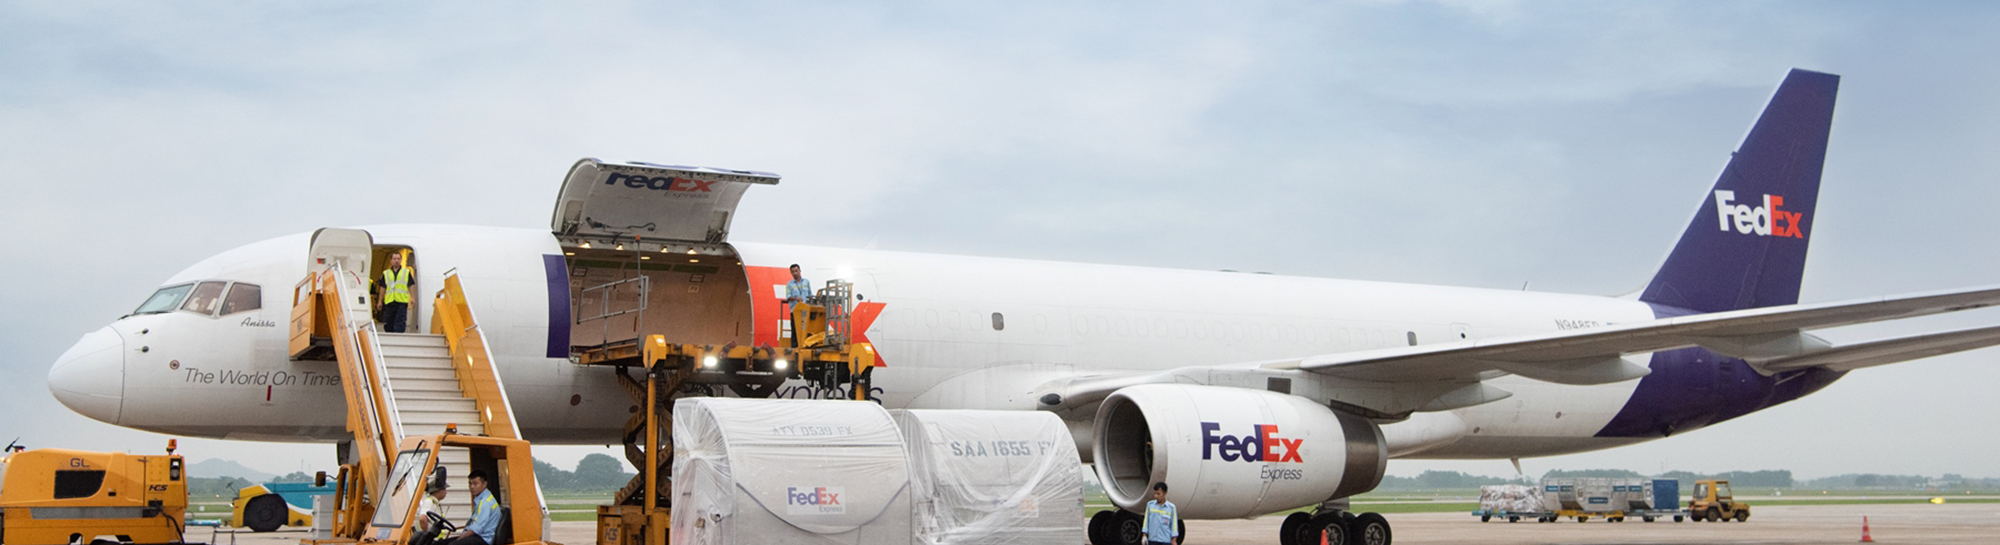 ¿Cómo funcionan los envíos con Fedex para eCommerce?